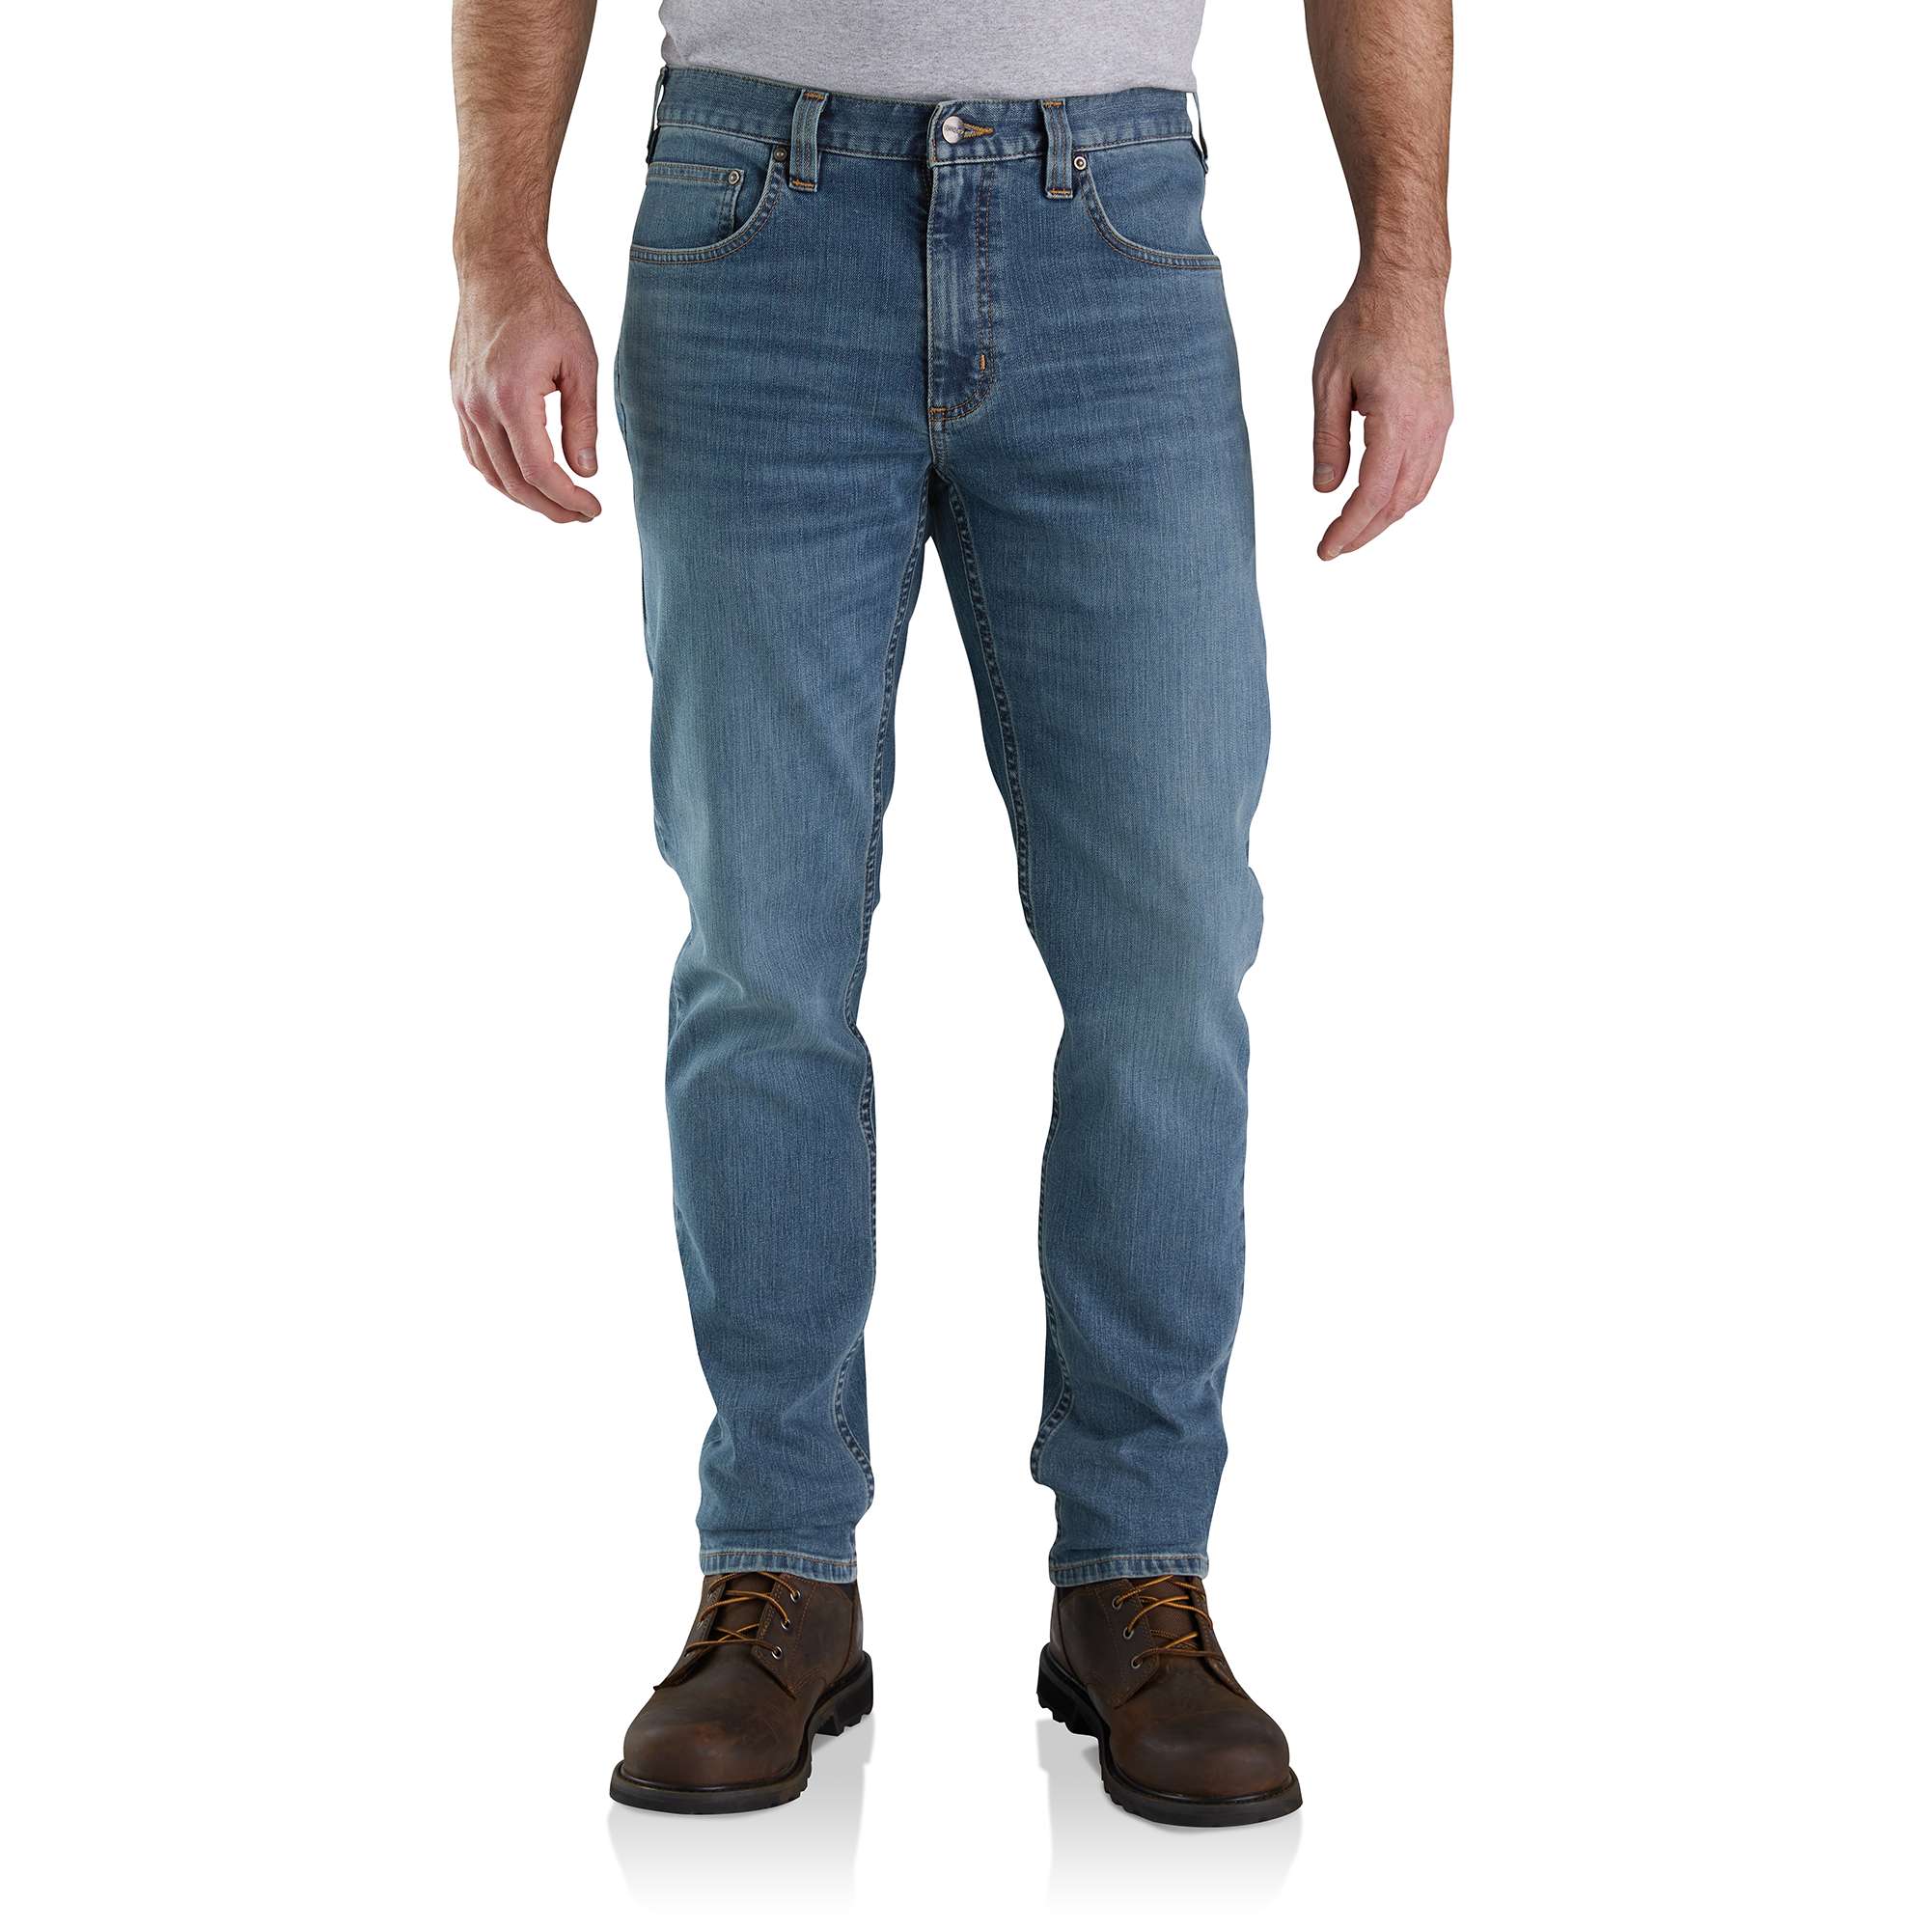 Pantalones De Colección Para Hombre Carhartt WIP Marrón Ruck Doble Rodilla  Descolorada Talla 33 Estilo Años 90